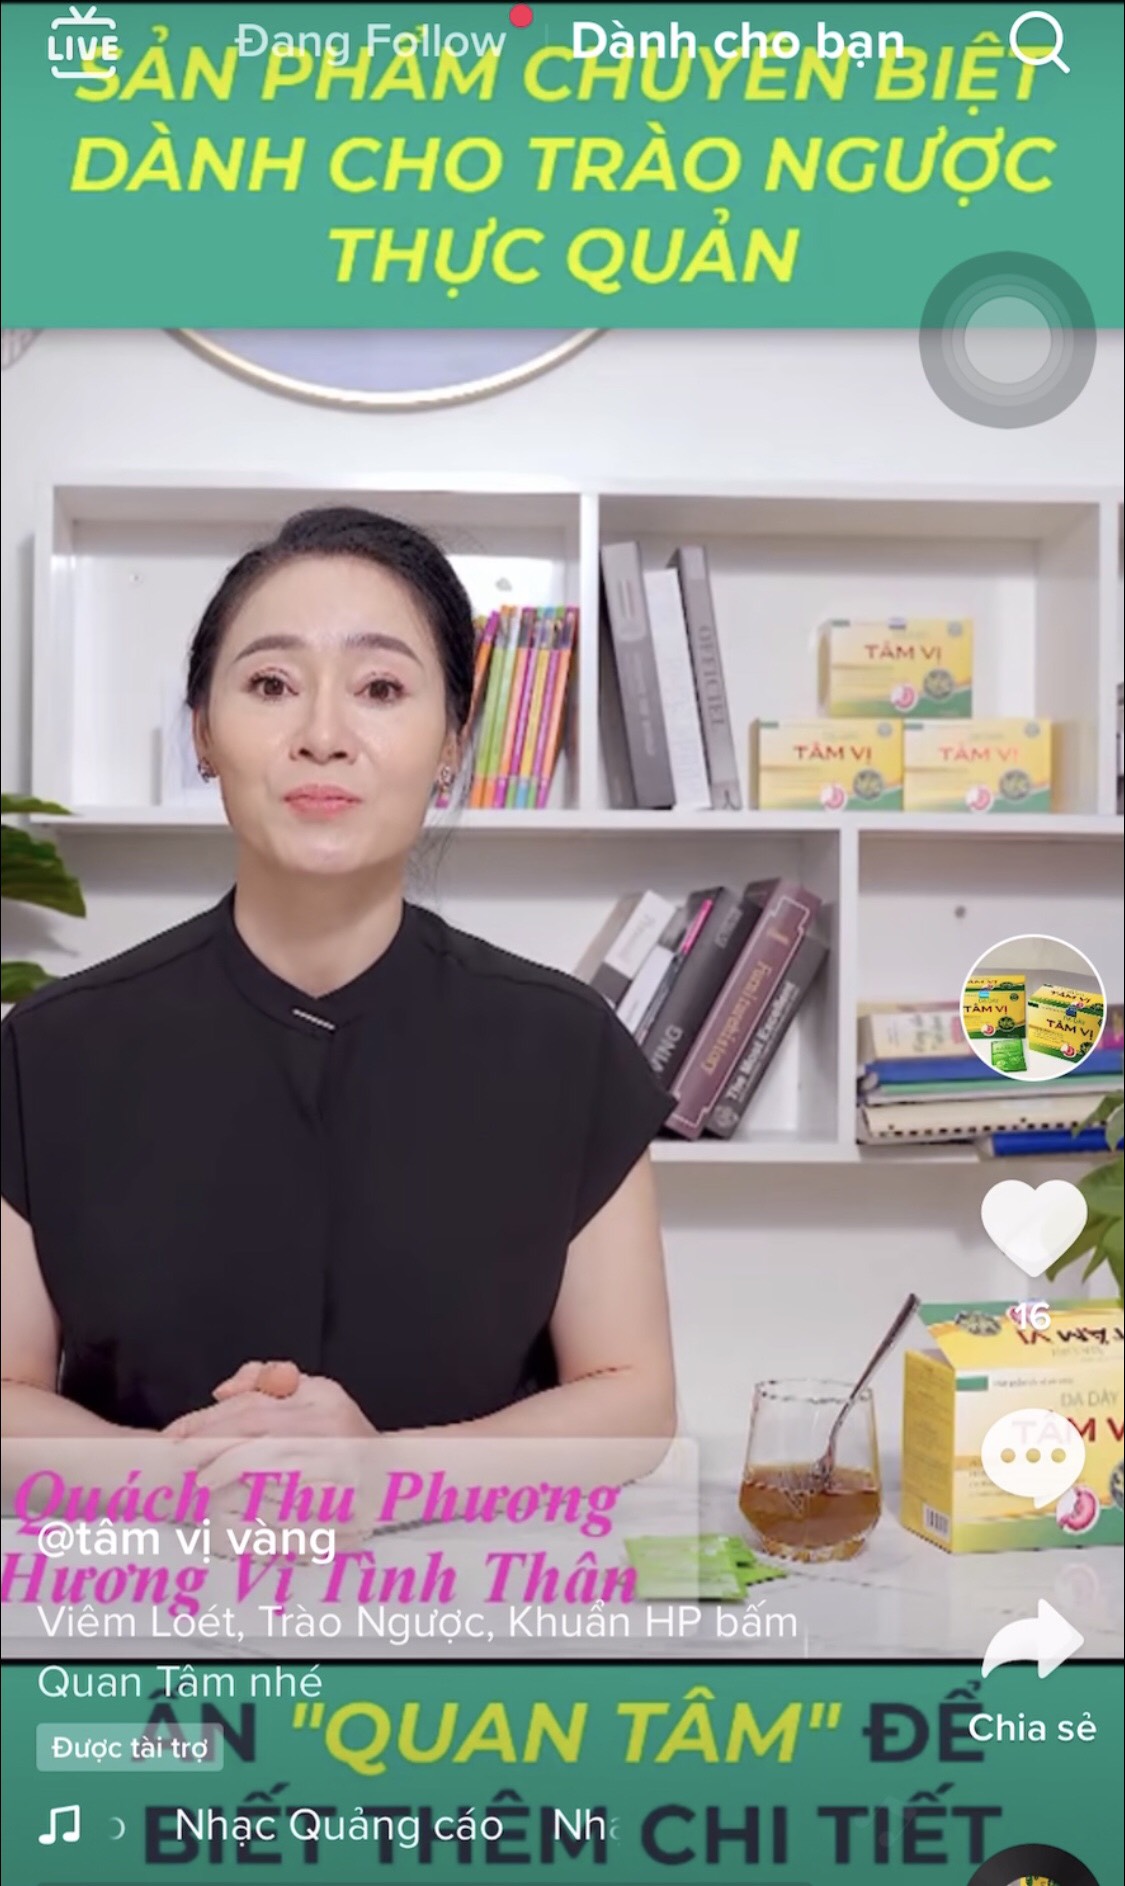 Nghệ sĩ Quang Thắng, Quách Thu Phương có đang 'tiếp tay' cho sản phẩm quảng cáo sai phạm?